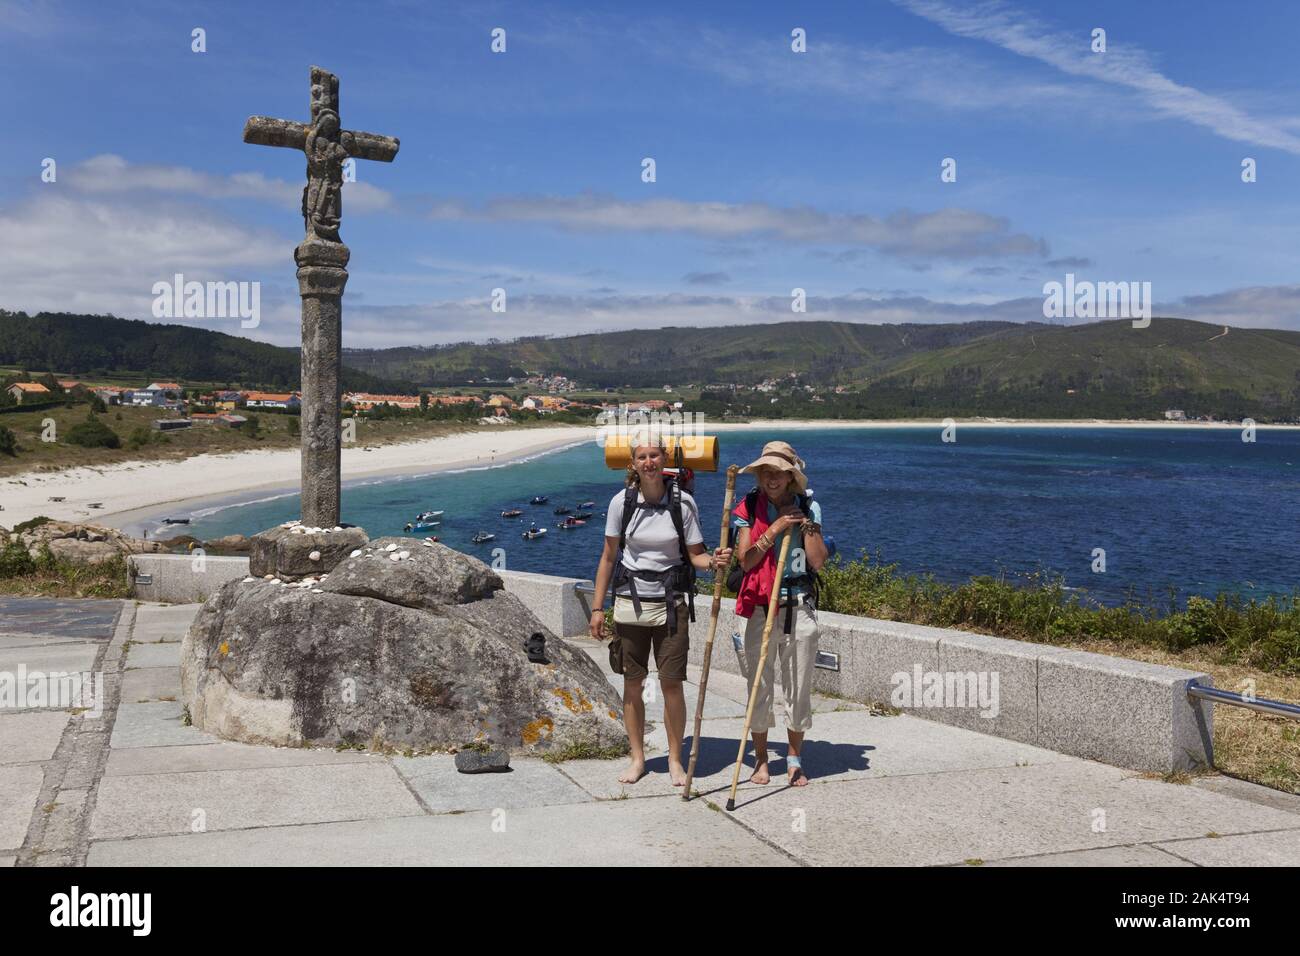 Fisterra: Figur des Heiligen Jakobus, Schutzpatron der Pilger, Spanien Norden | usage worldwide Stock Photo